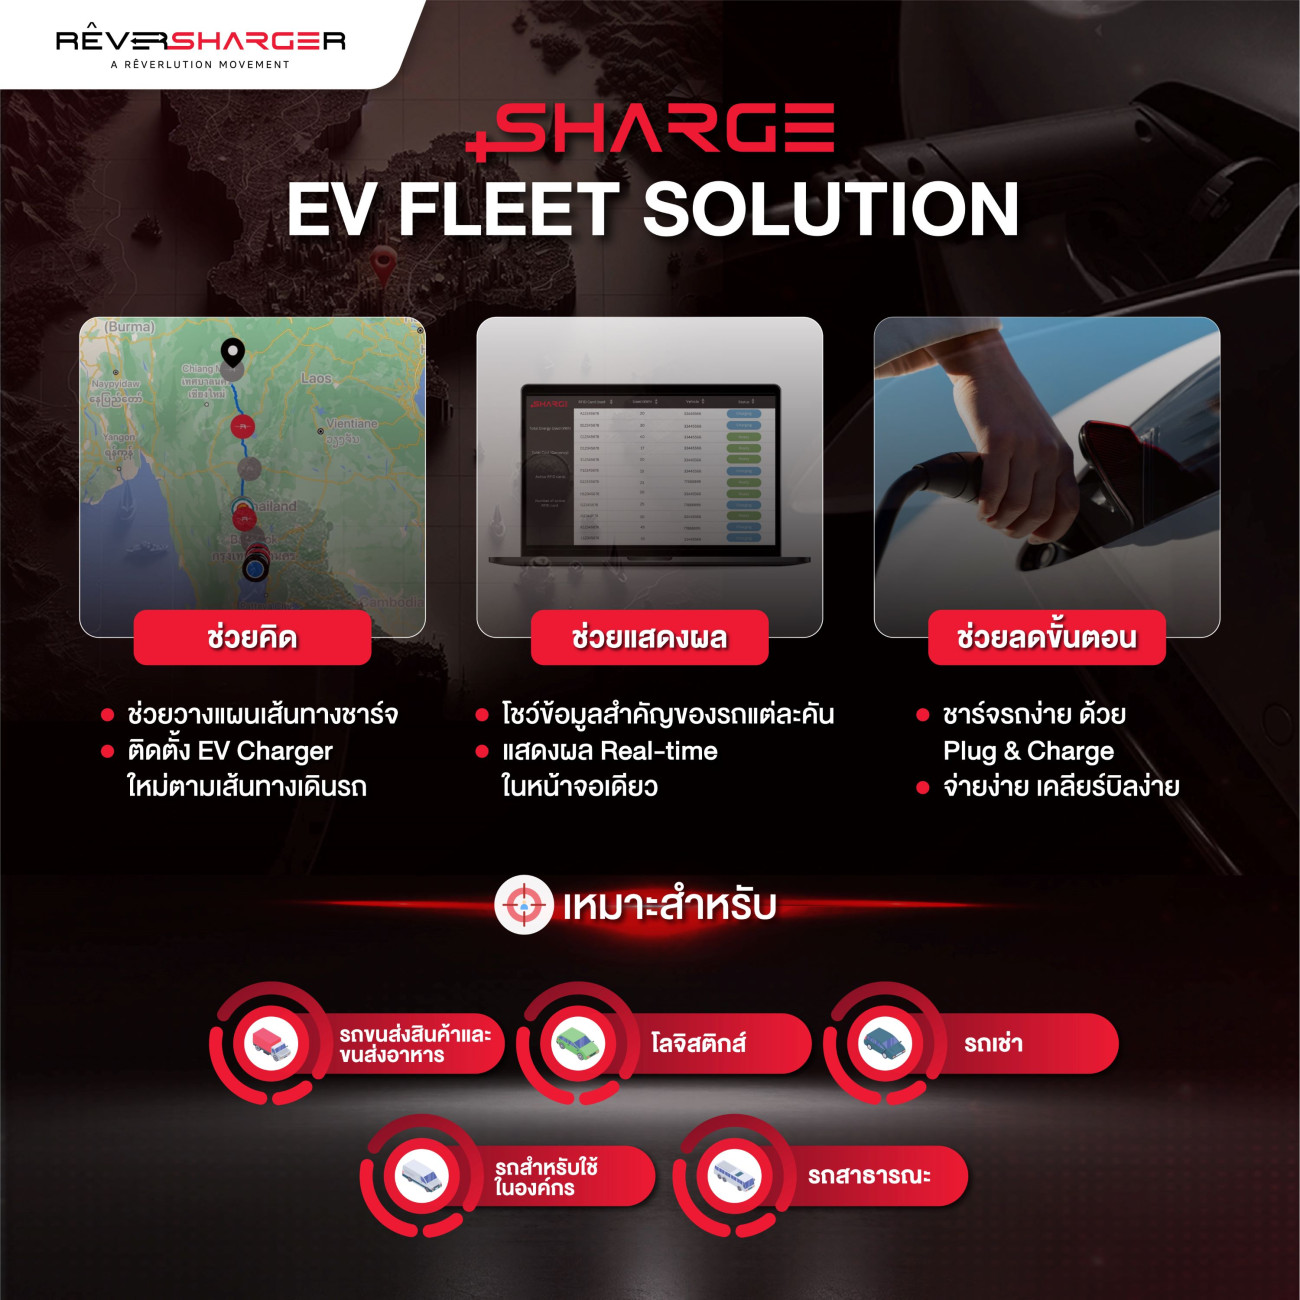 SHARGE เปิดตัว “EV Fleet Solutions” ดูแลรถองค์กร-รถเชิงพาณิชย์ครบวงจรครั้งแรกในไทย ชูหลากบริการ-เทคโนโลยี ช่วยองค์กรชาร์จง่าย-บริหารง่าย-ลดขั้นตอน